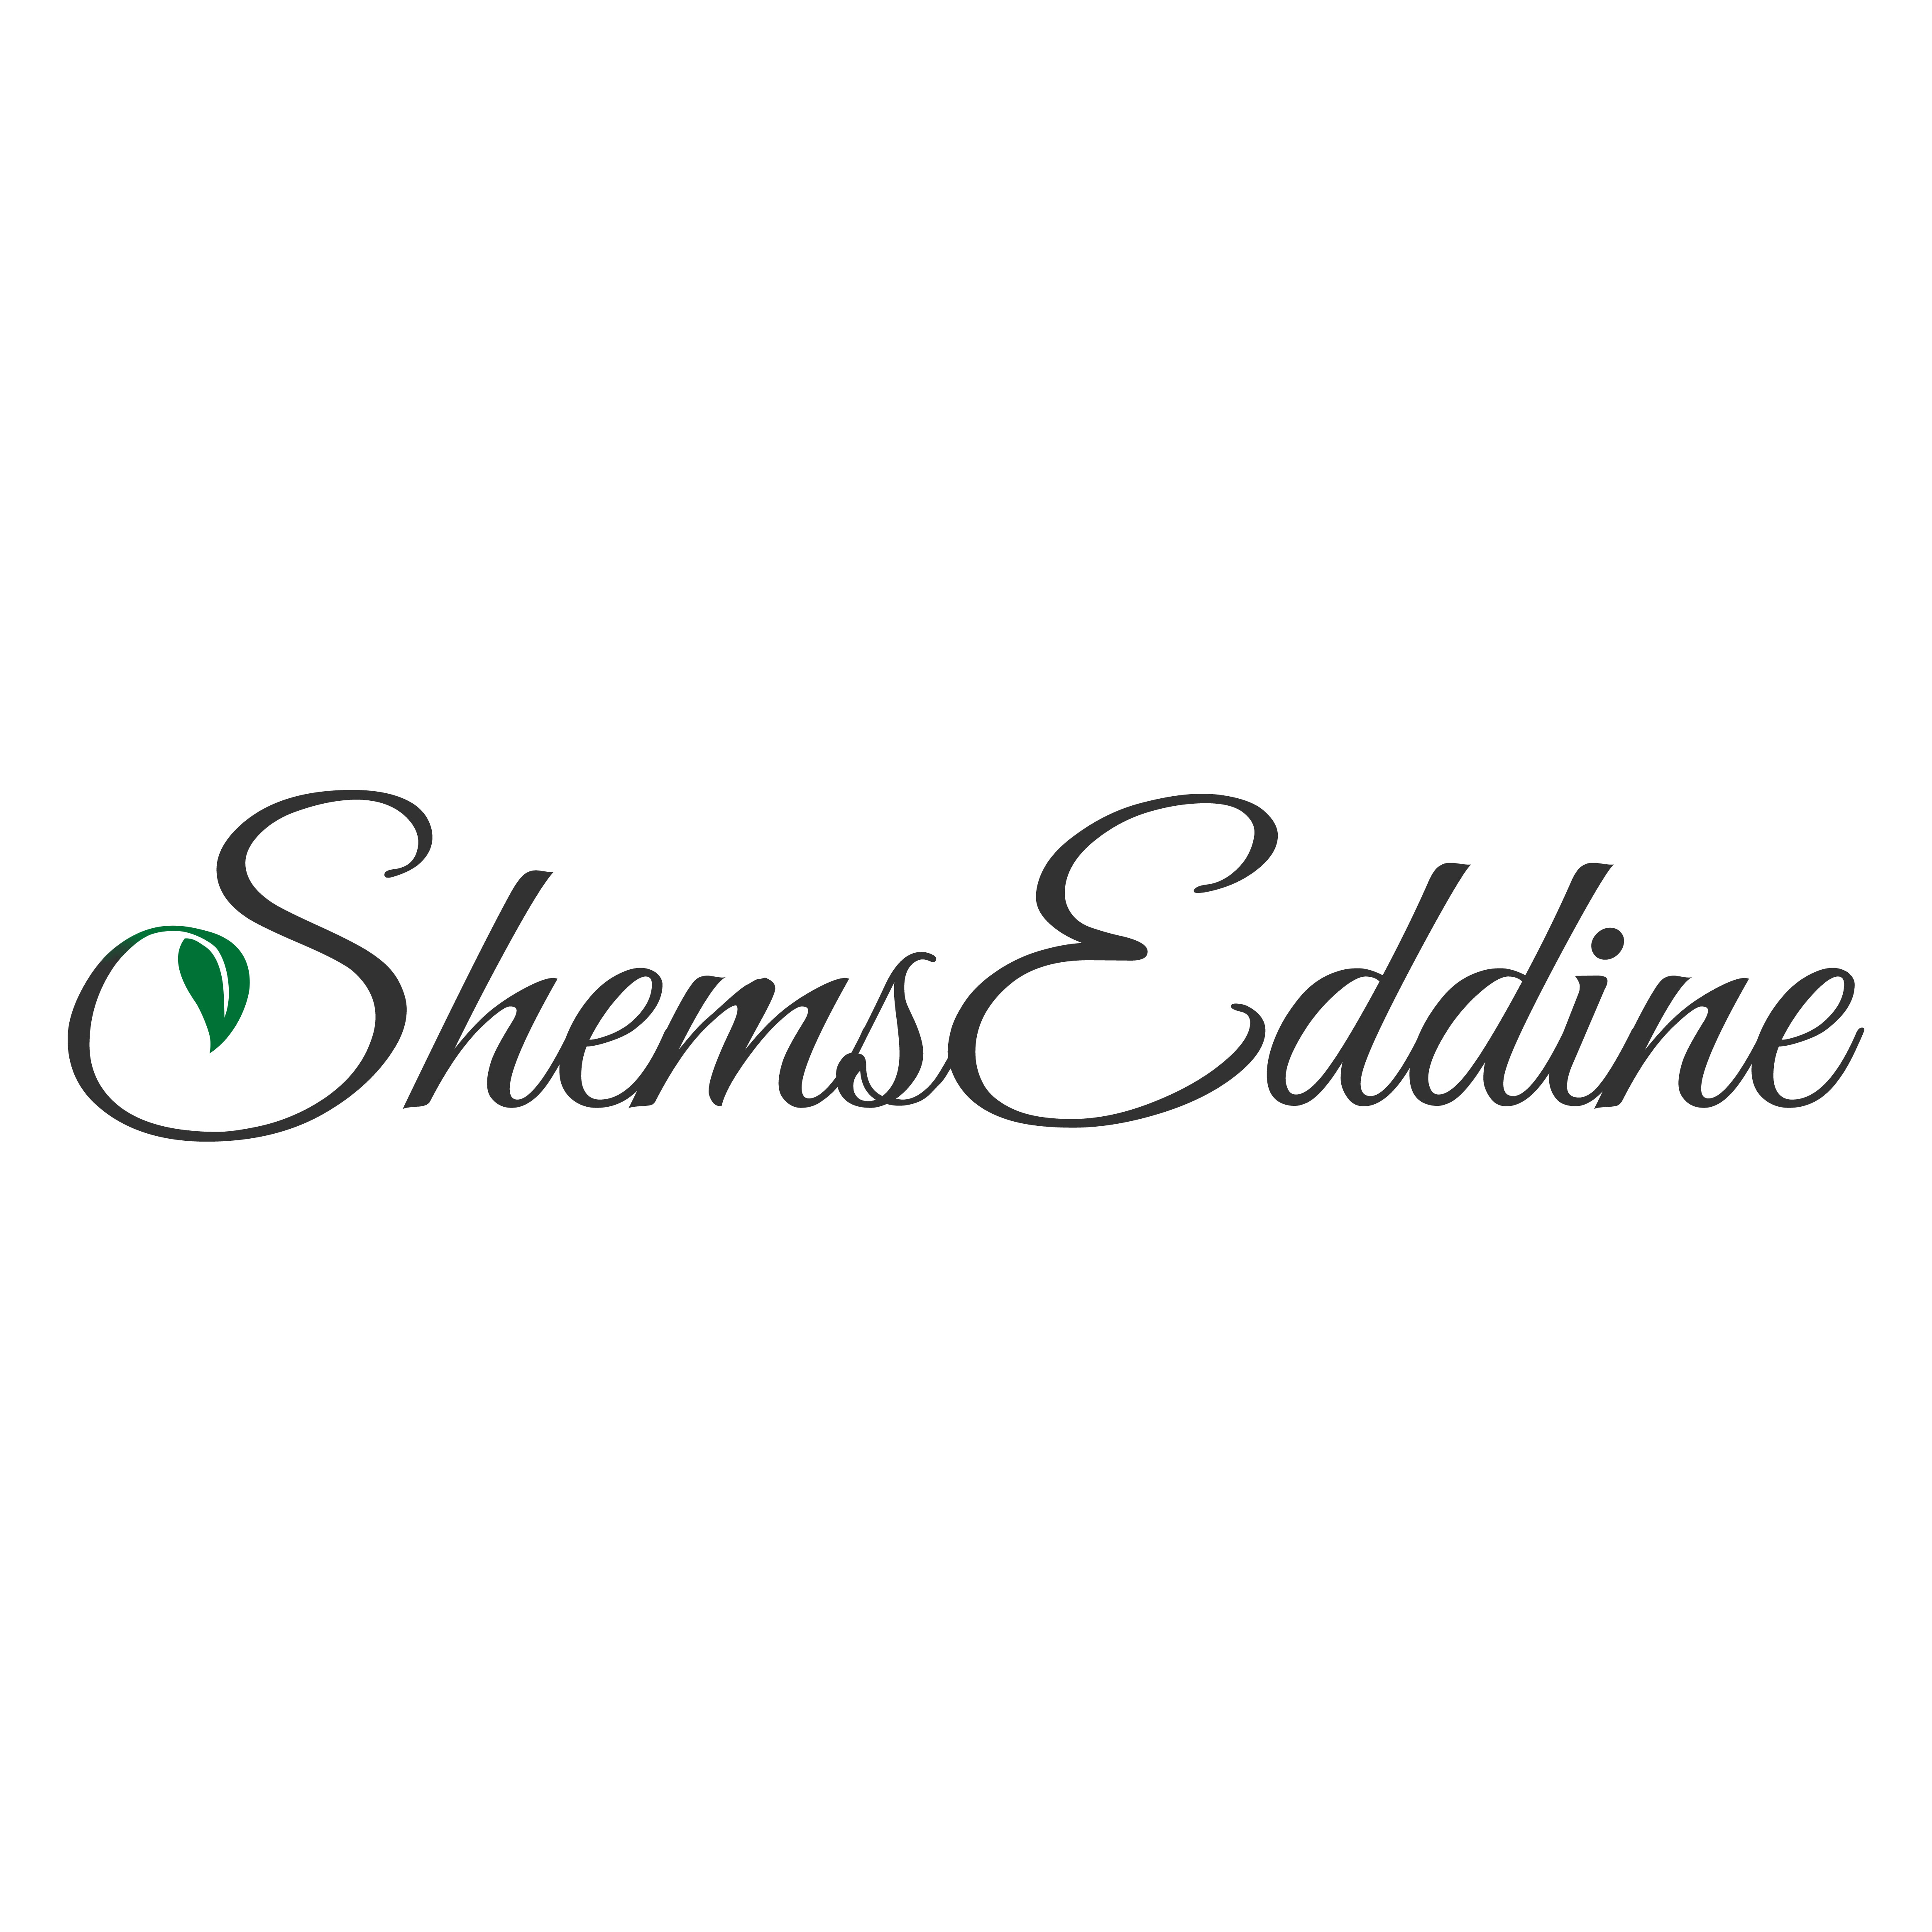 Shems Eddine Mohameds Profilbild